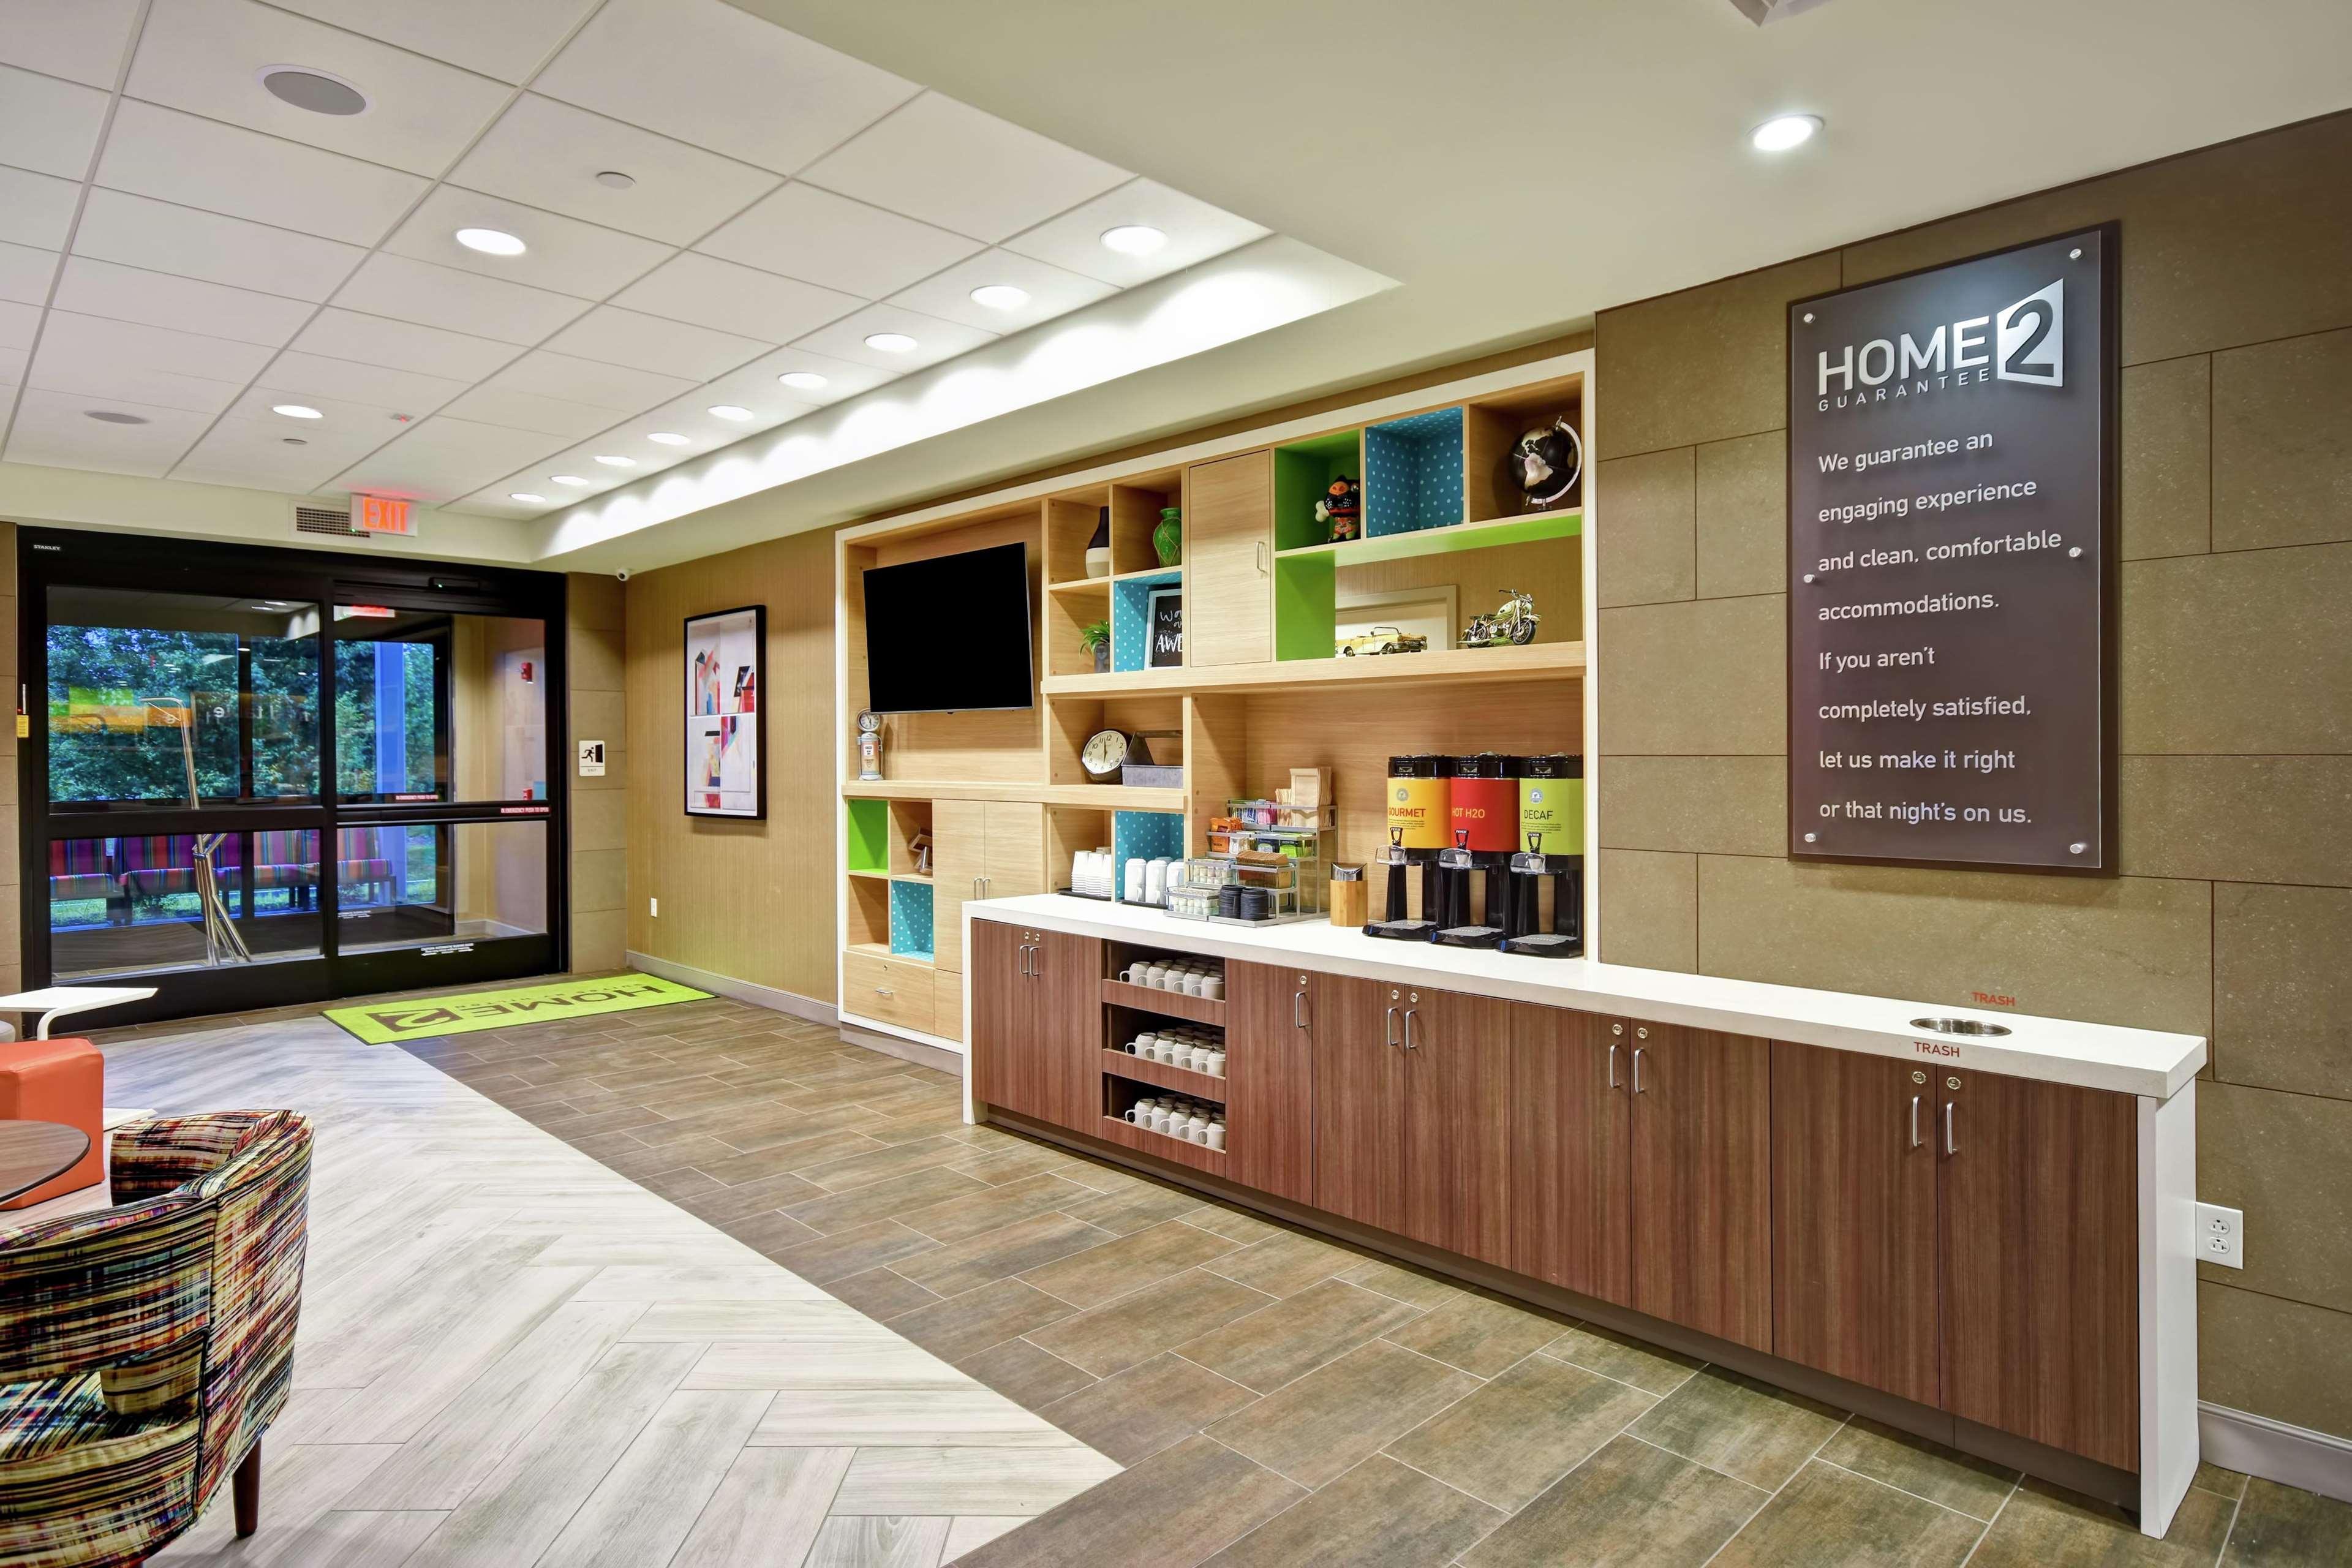 Home2 Suites by Hilton Mechanicsburg, PA